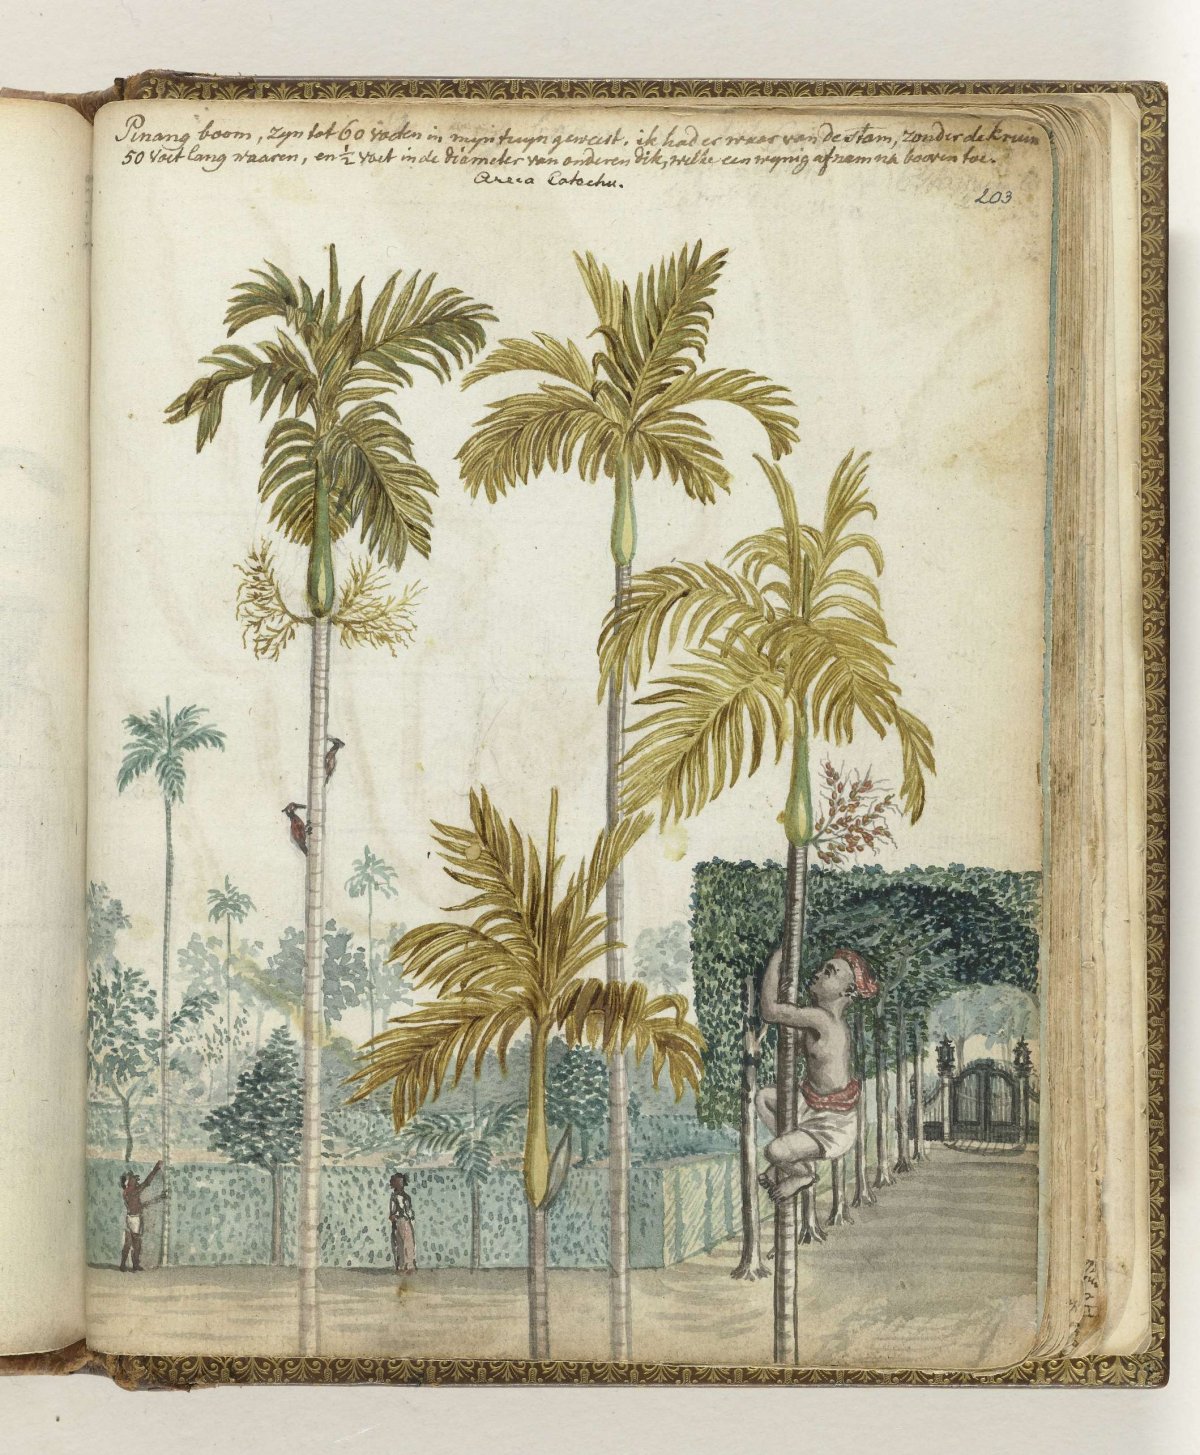 Pinan trees at estate, Jan Brandes, 1779 - 1785